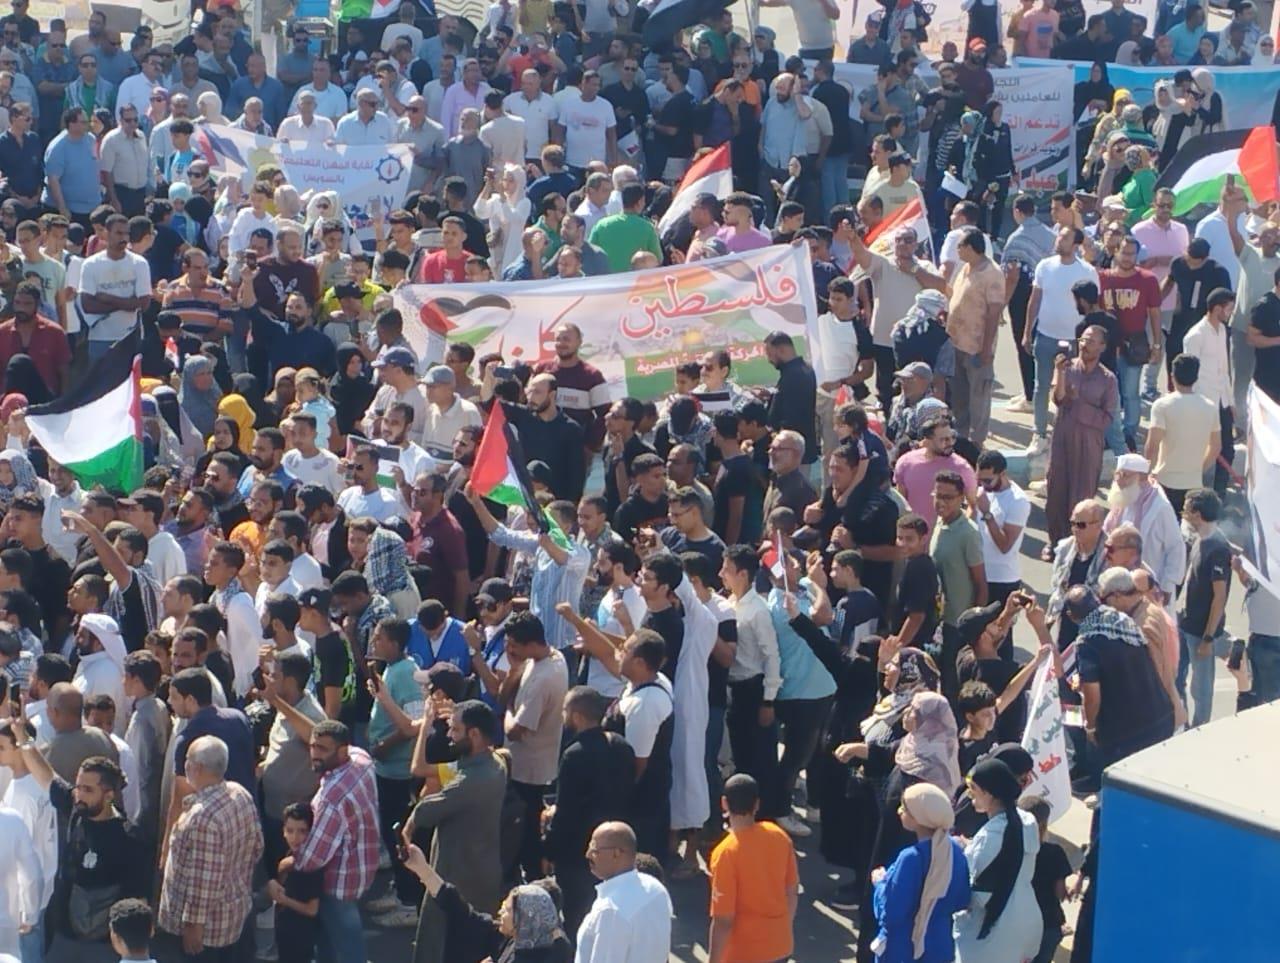 الحركة الوطنية بالسويس يشارك في مظاهرات دعم فلسطين ويؤكد: فوضنا السيسي | صور 